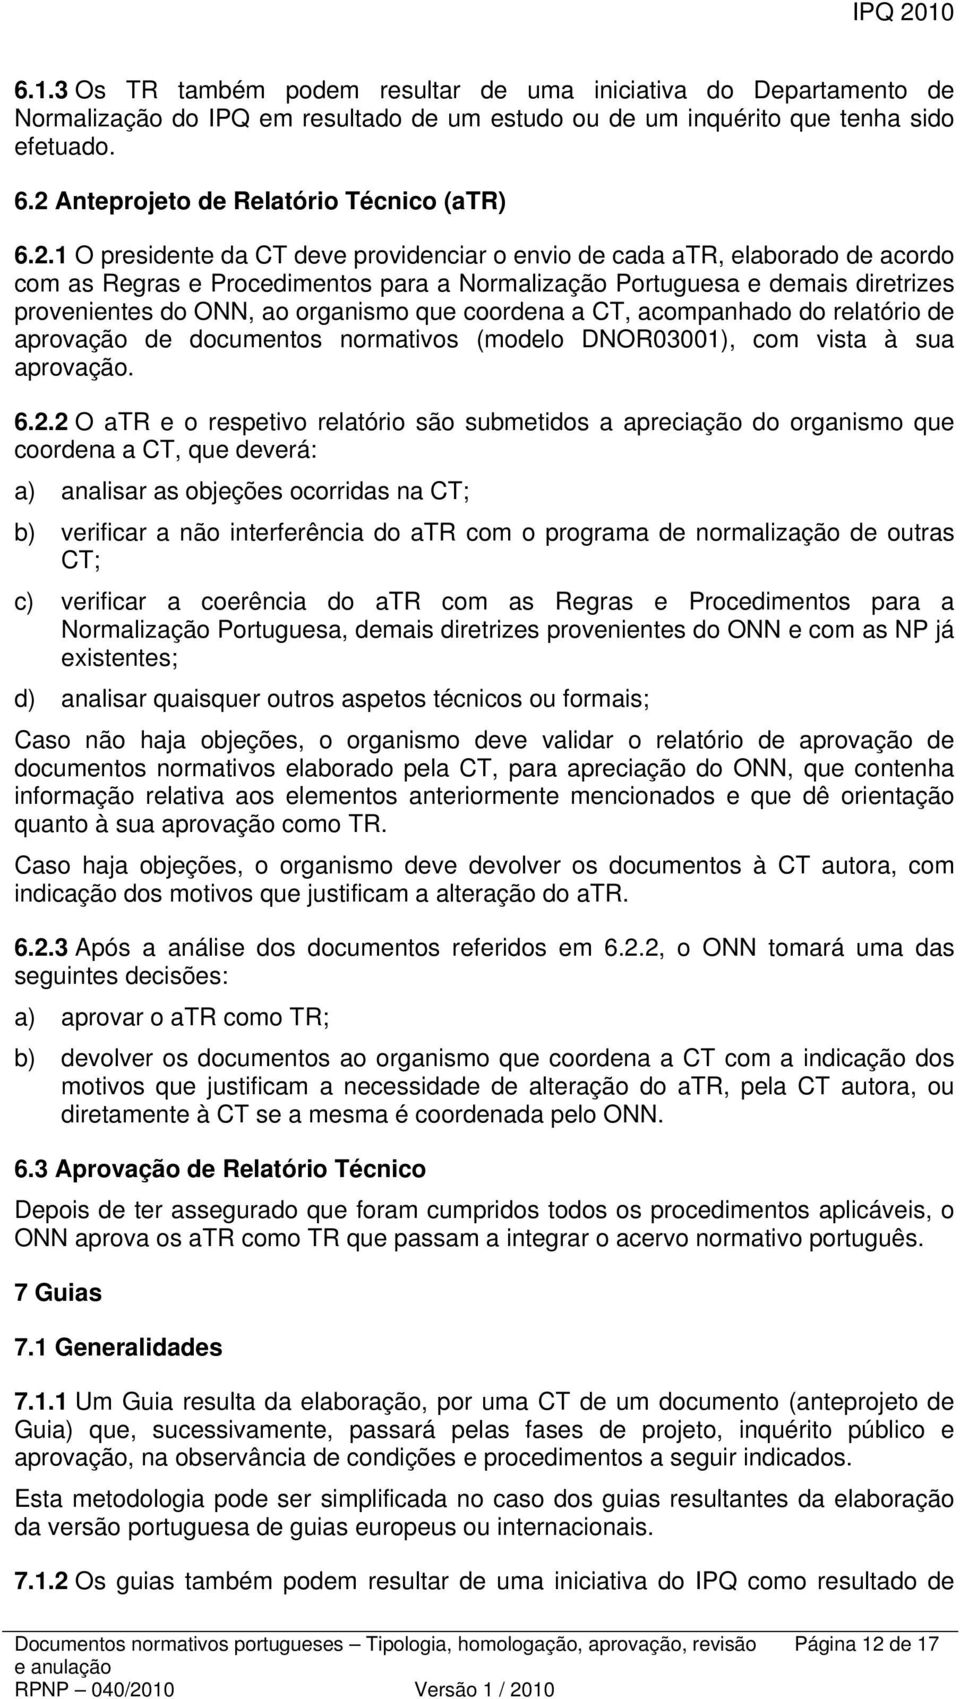 diretrizes provenientes do ONN, ao organismo que coordena a CT, acompanhado do relatório de aprovação de documentos normativos (modelo DNOR03001), com vista à sua aprovação. 6.2.